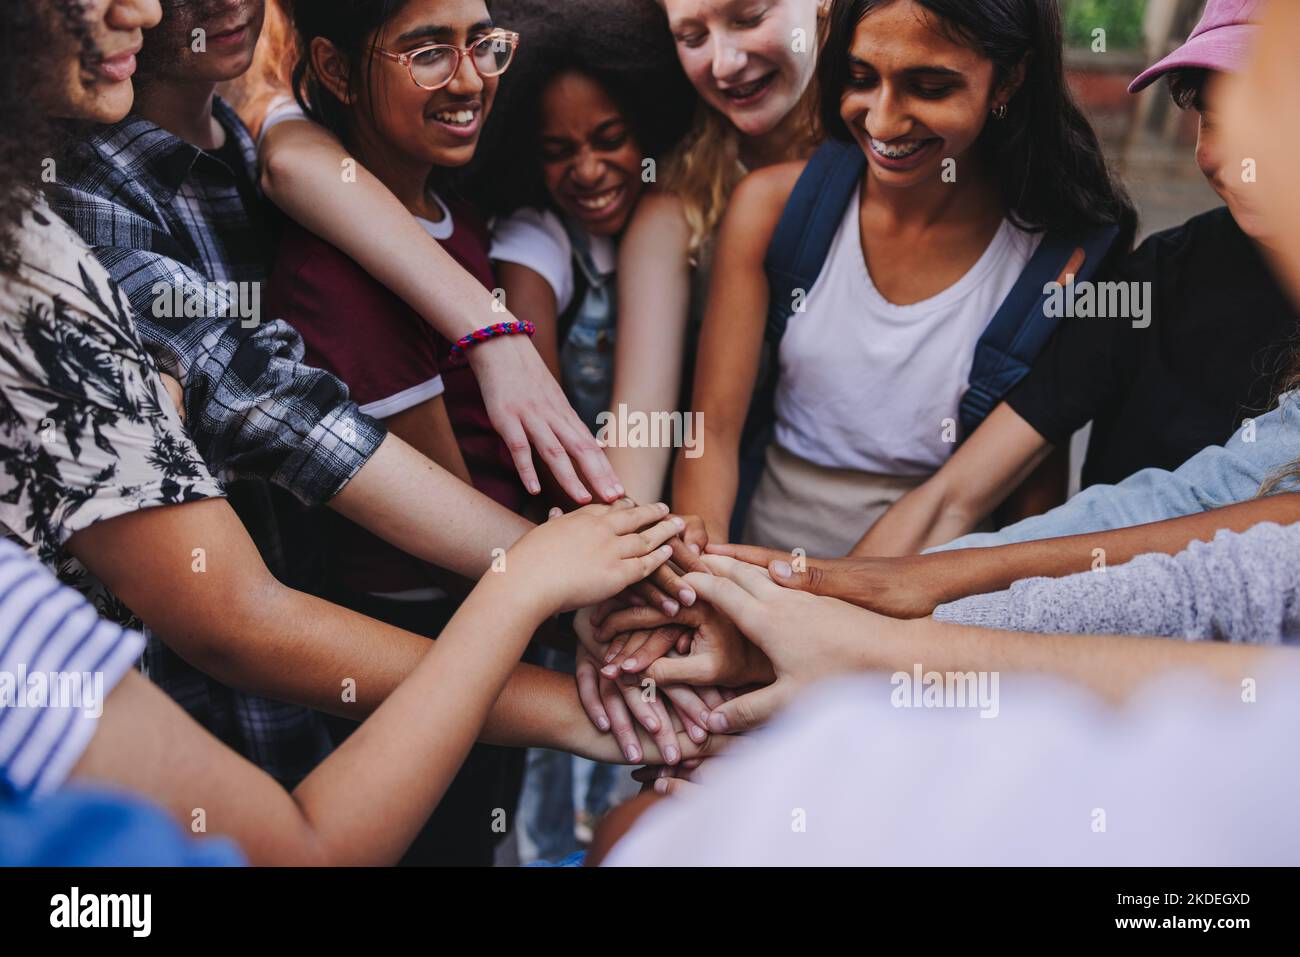 Multikulturelle Jugendliche lächeln fröhlich, während sie ihre Hände in einer Hudle zusammenlegen. Gruppe von Jugendlichen der Generation z stapeln ihre Hände auf o Stockfoto